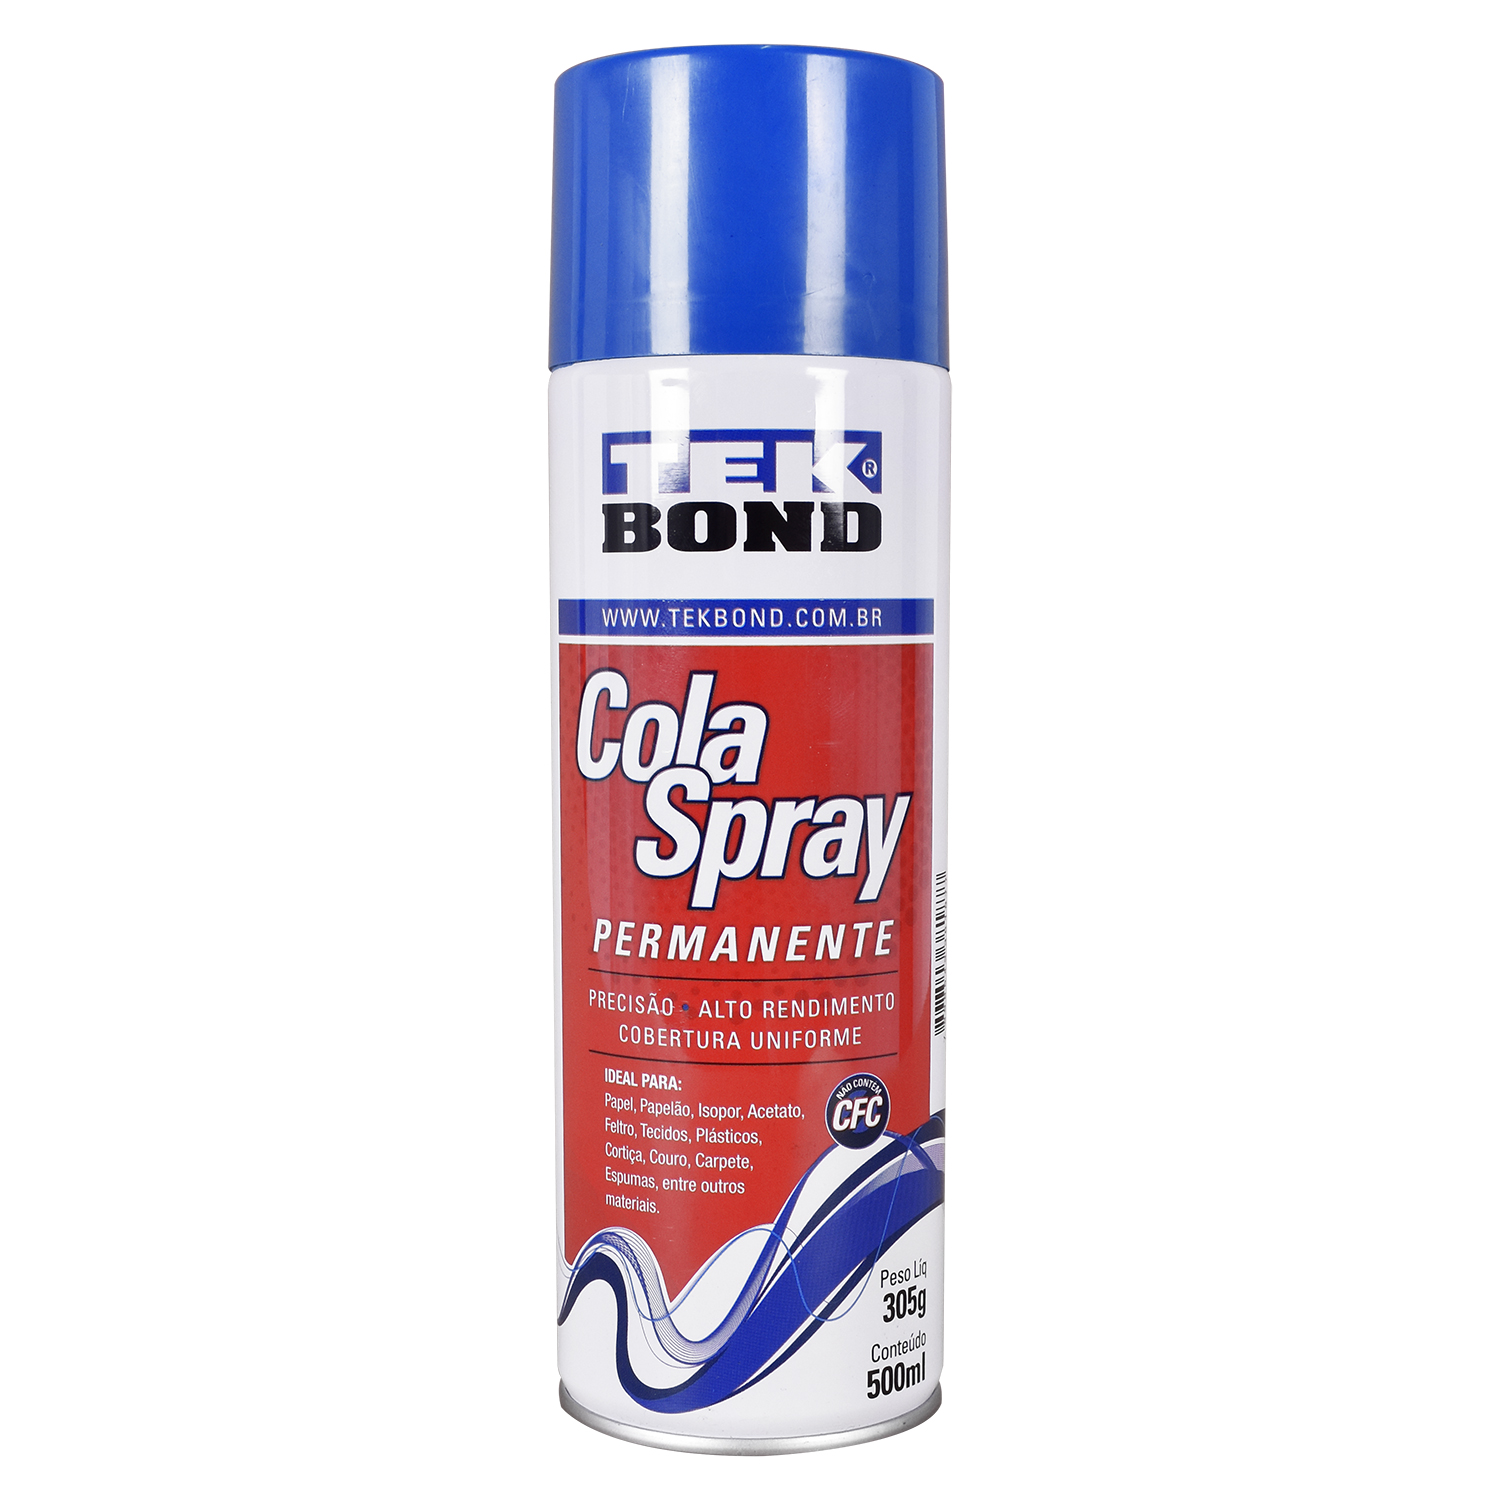 Cola Spray Permanente 305G/500Ml Tekbond